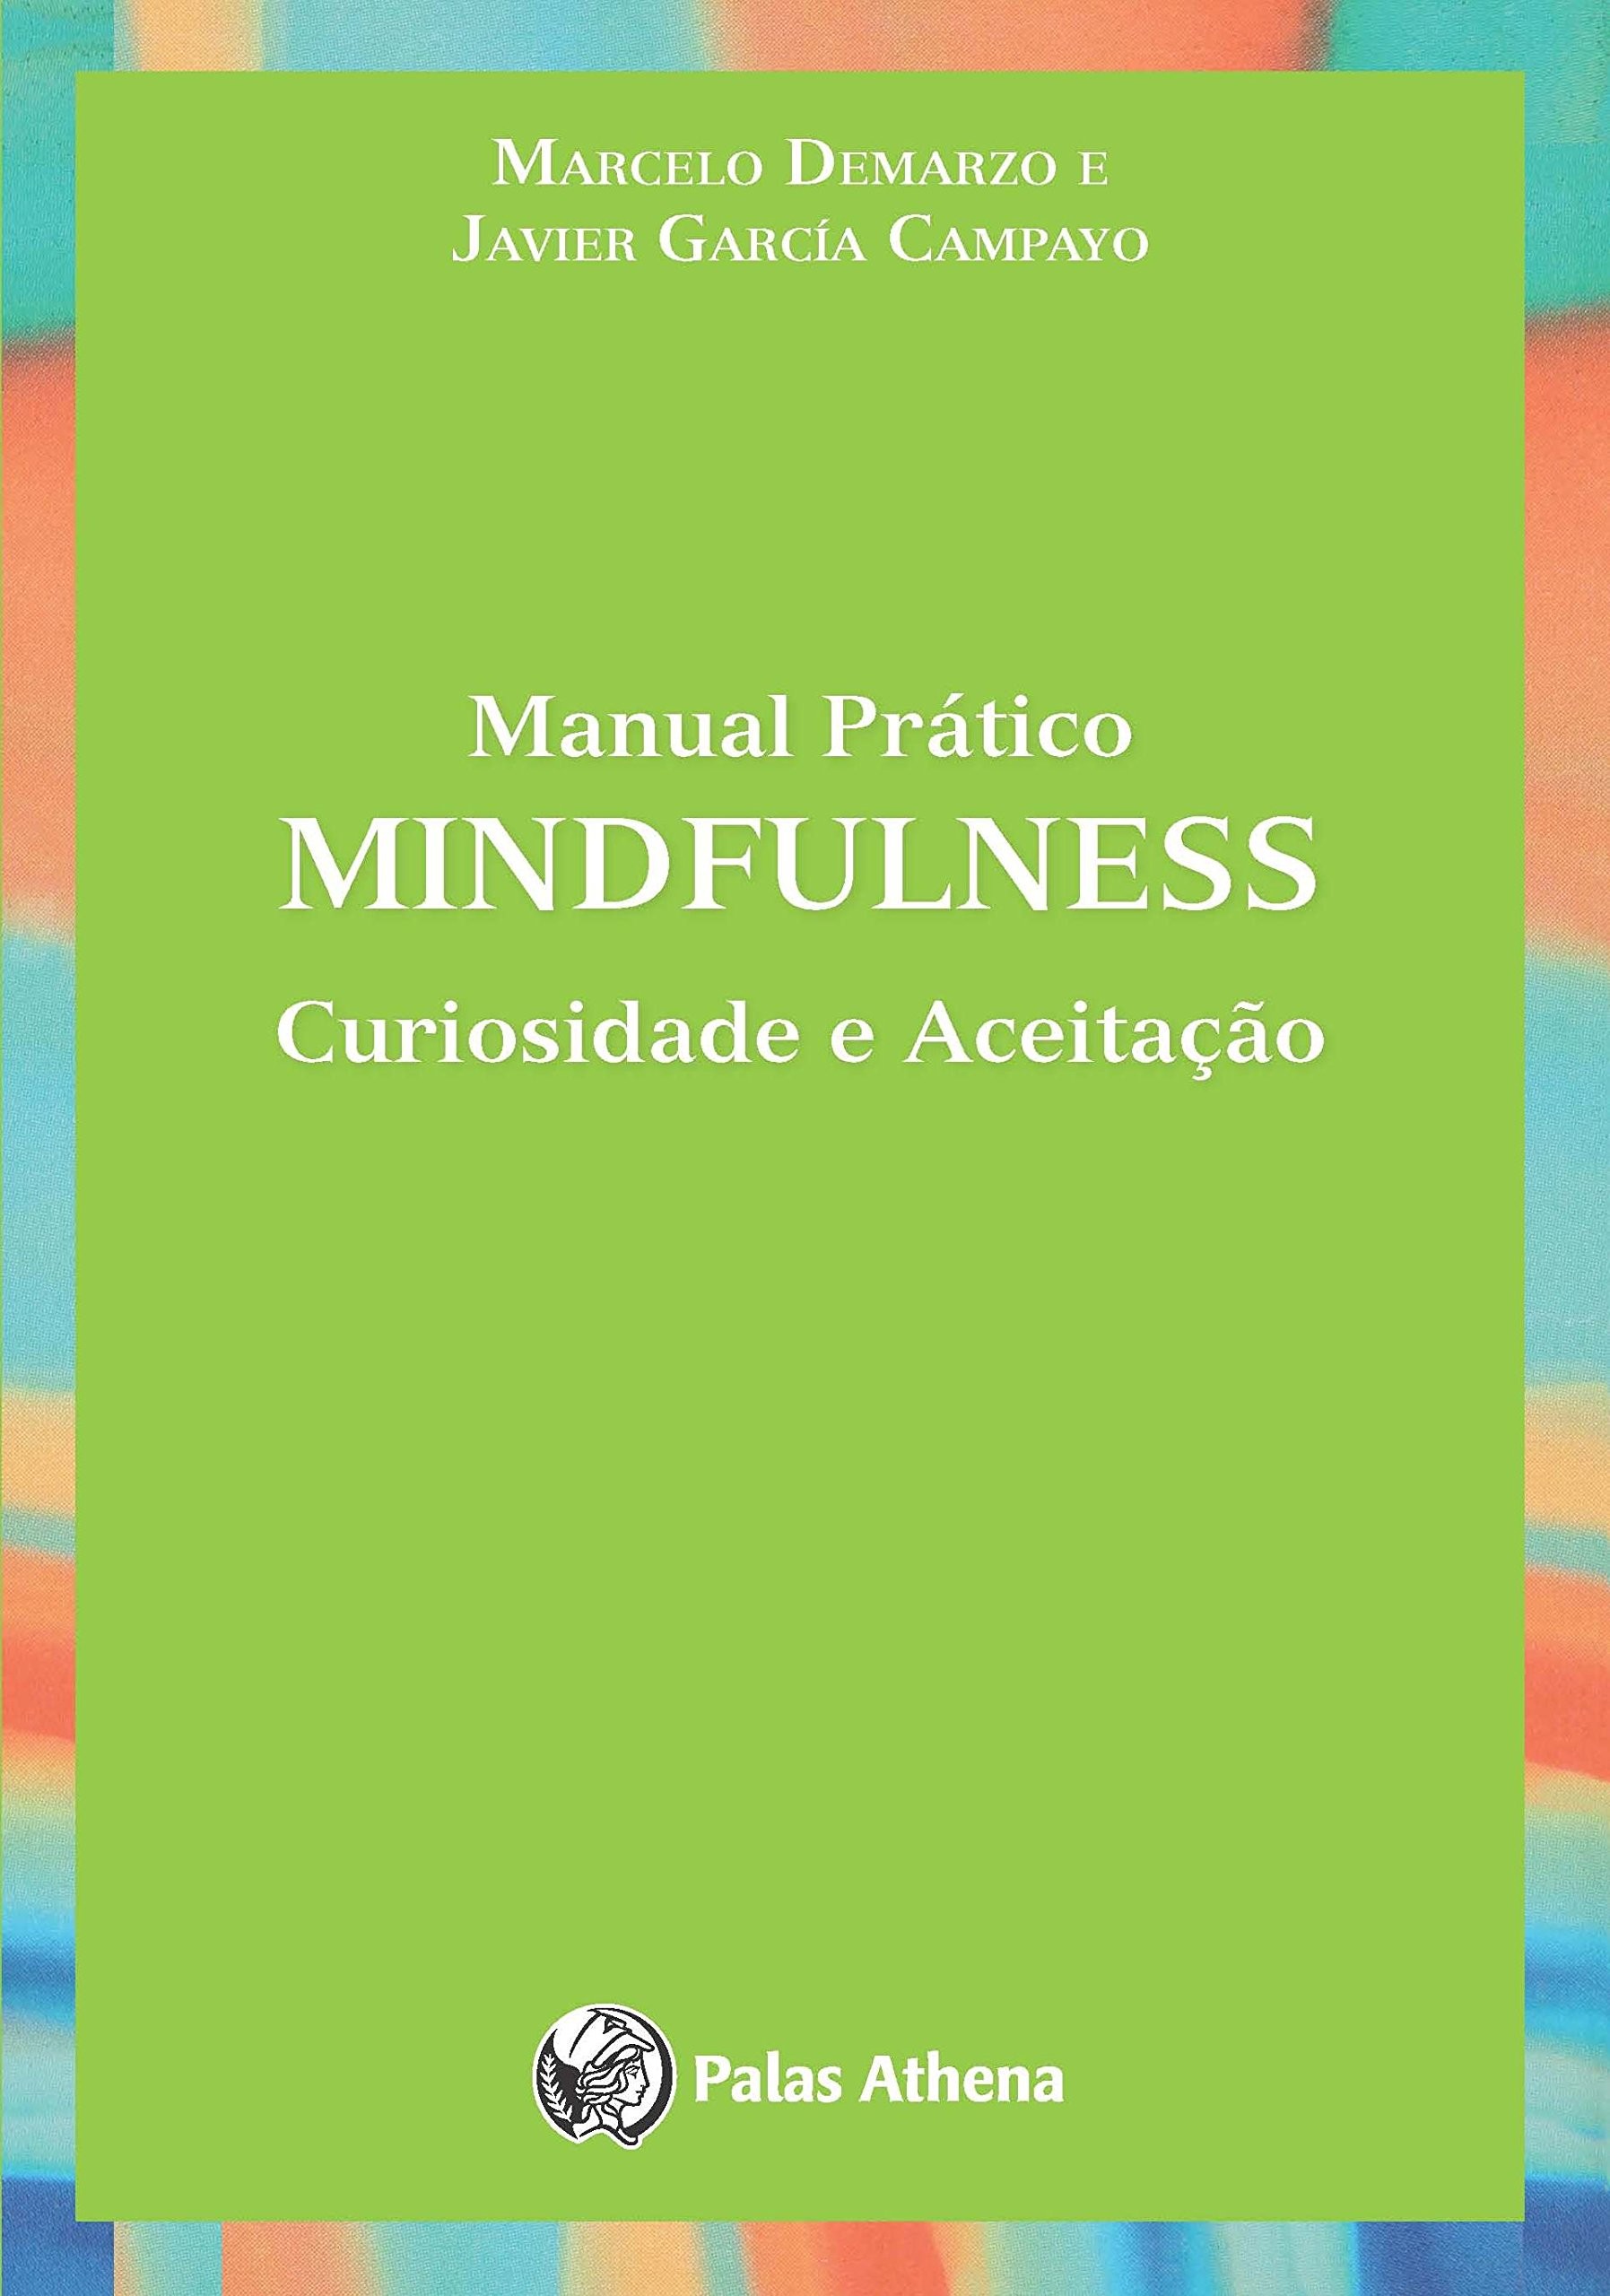 Manual Prático Mindfulness - Curiosidade e Aceitação